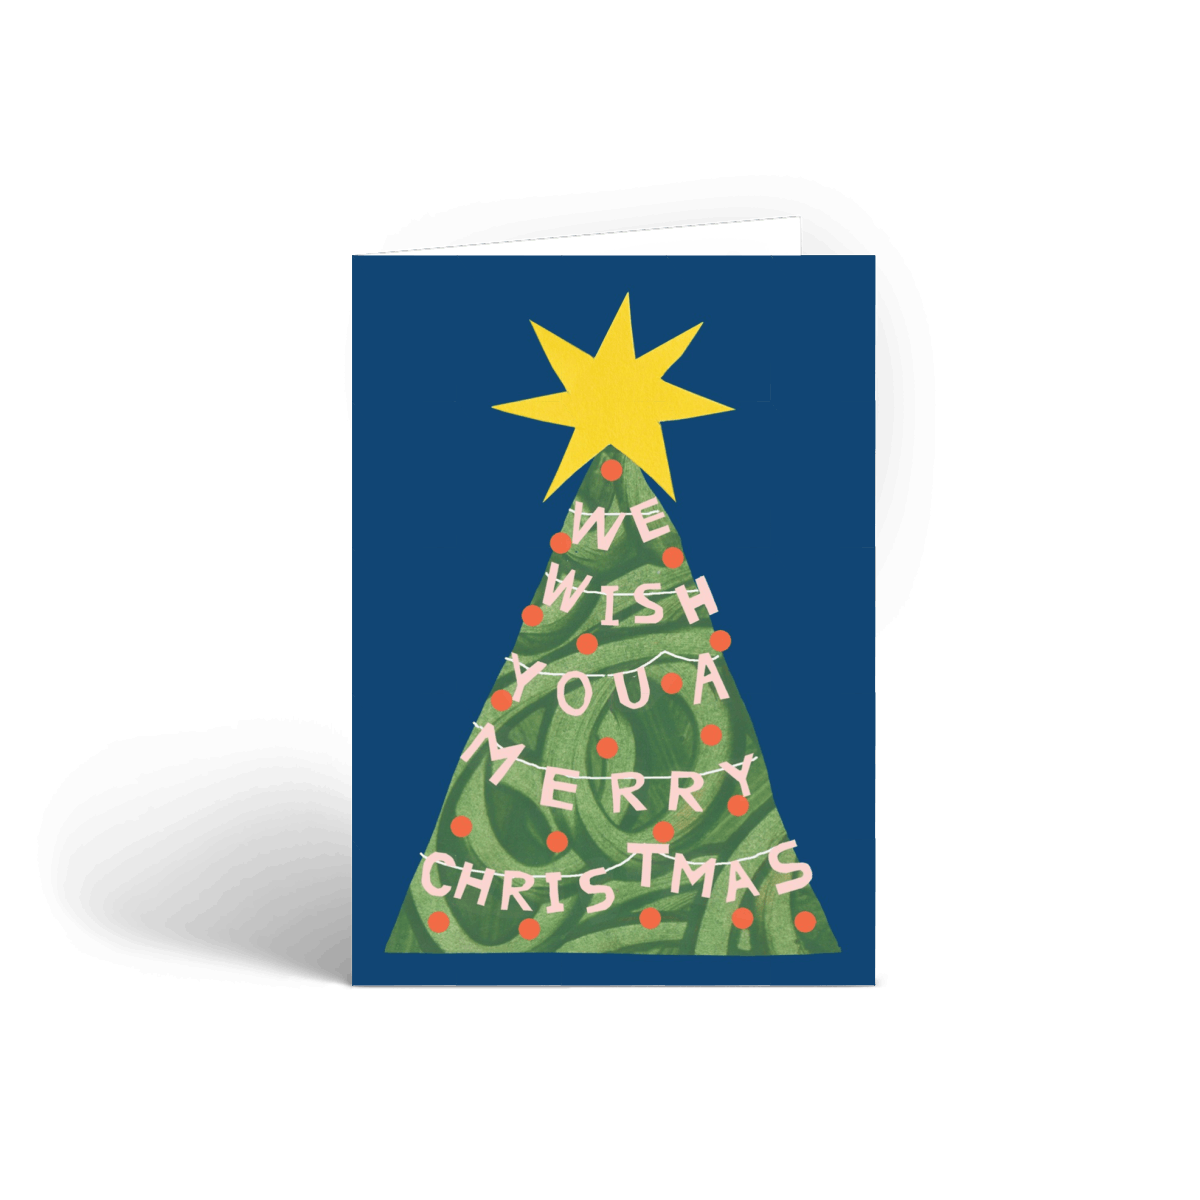 Christmas Tree Carol